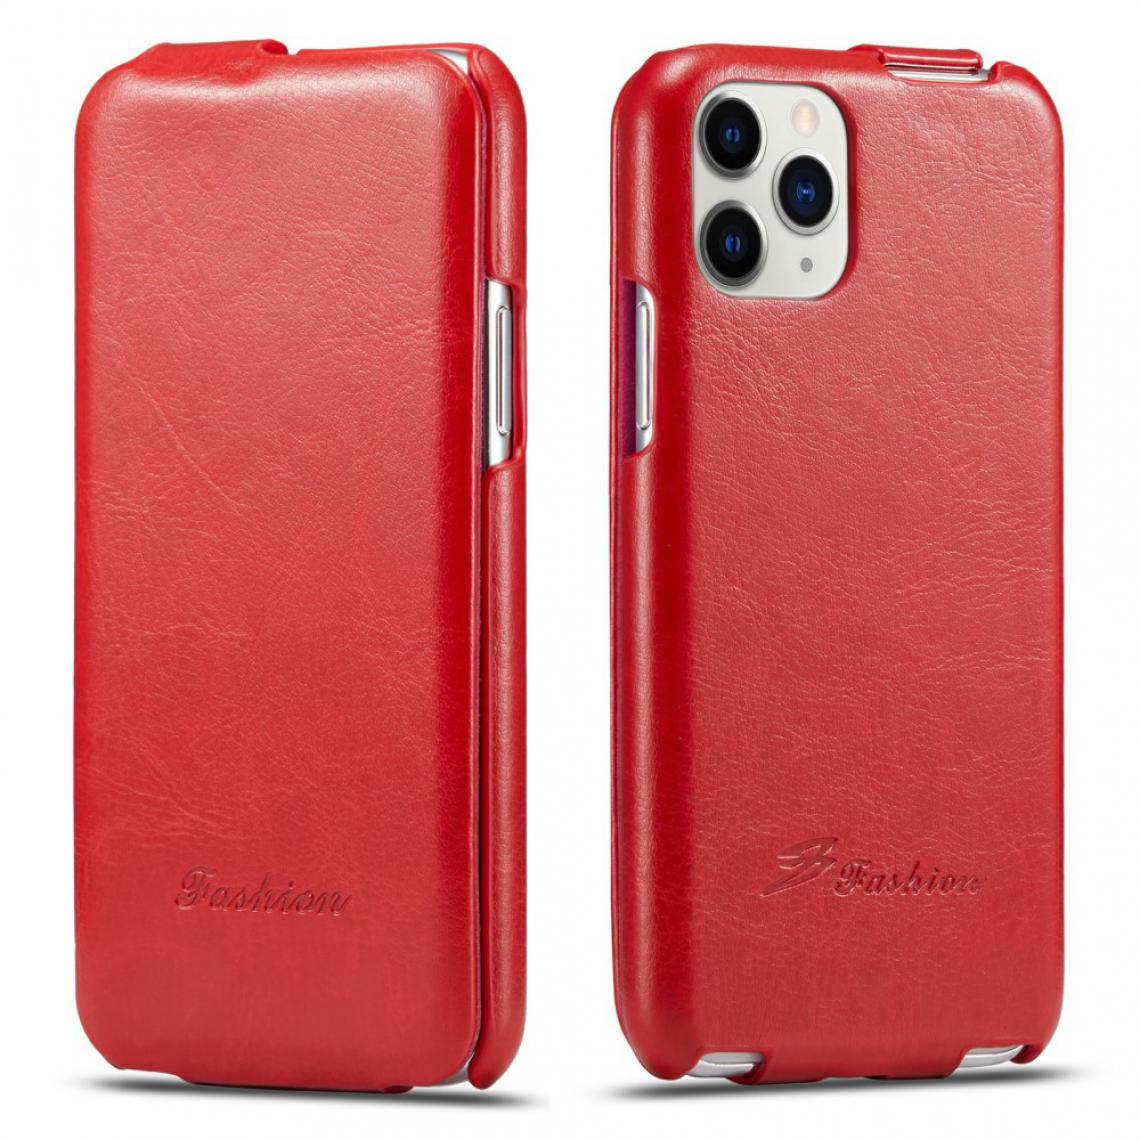 Other - Coque en TPU + PU Flip vertical texturé rouge pour votre Apple iPhone 11 Pro Max 6.5 pouces - Coque, étui smartphone